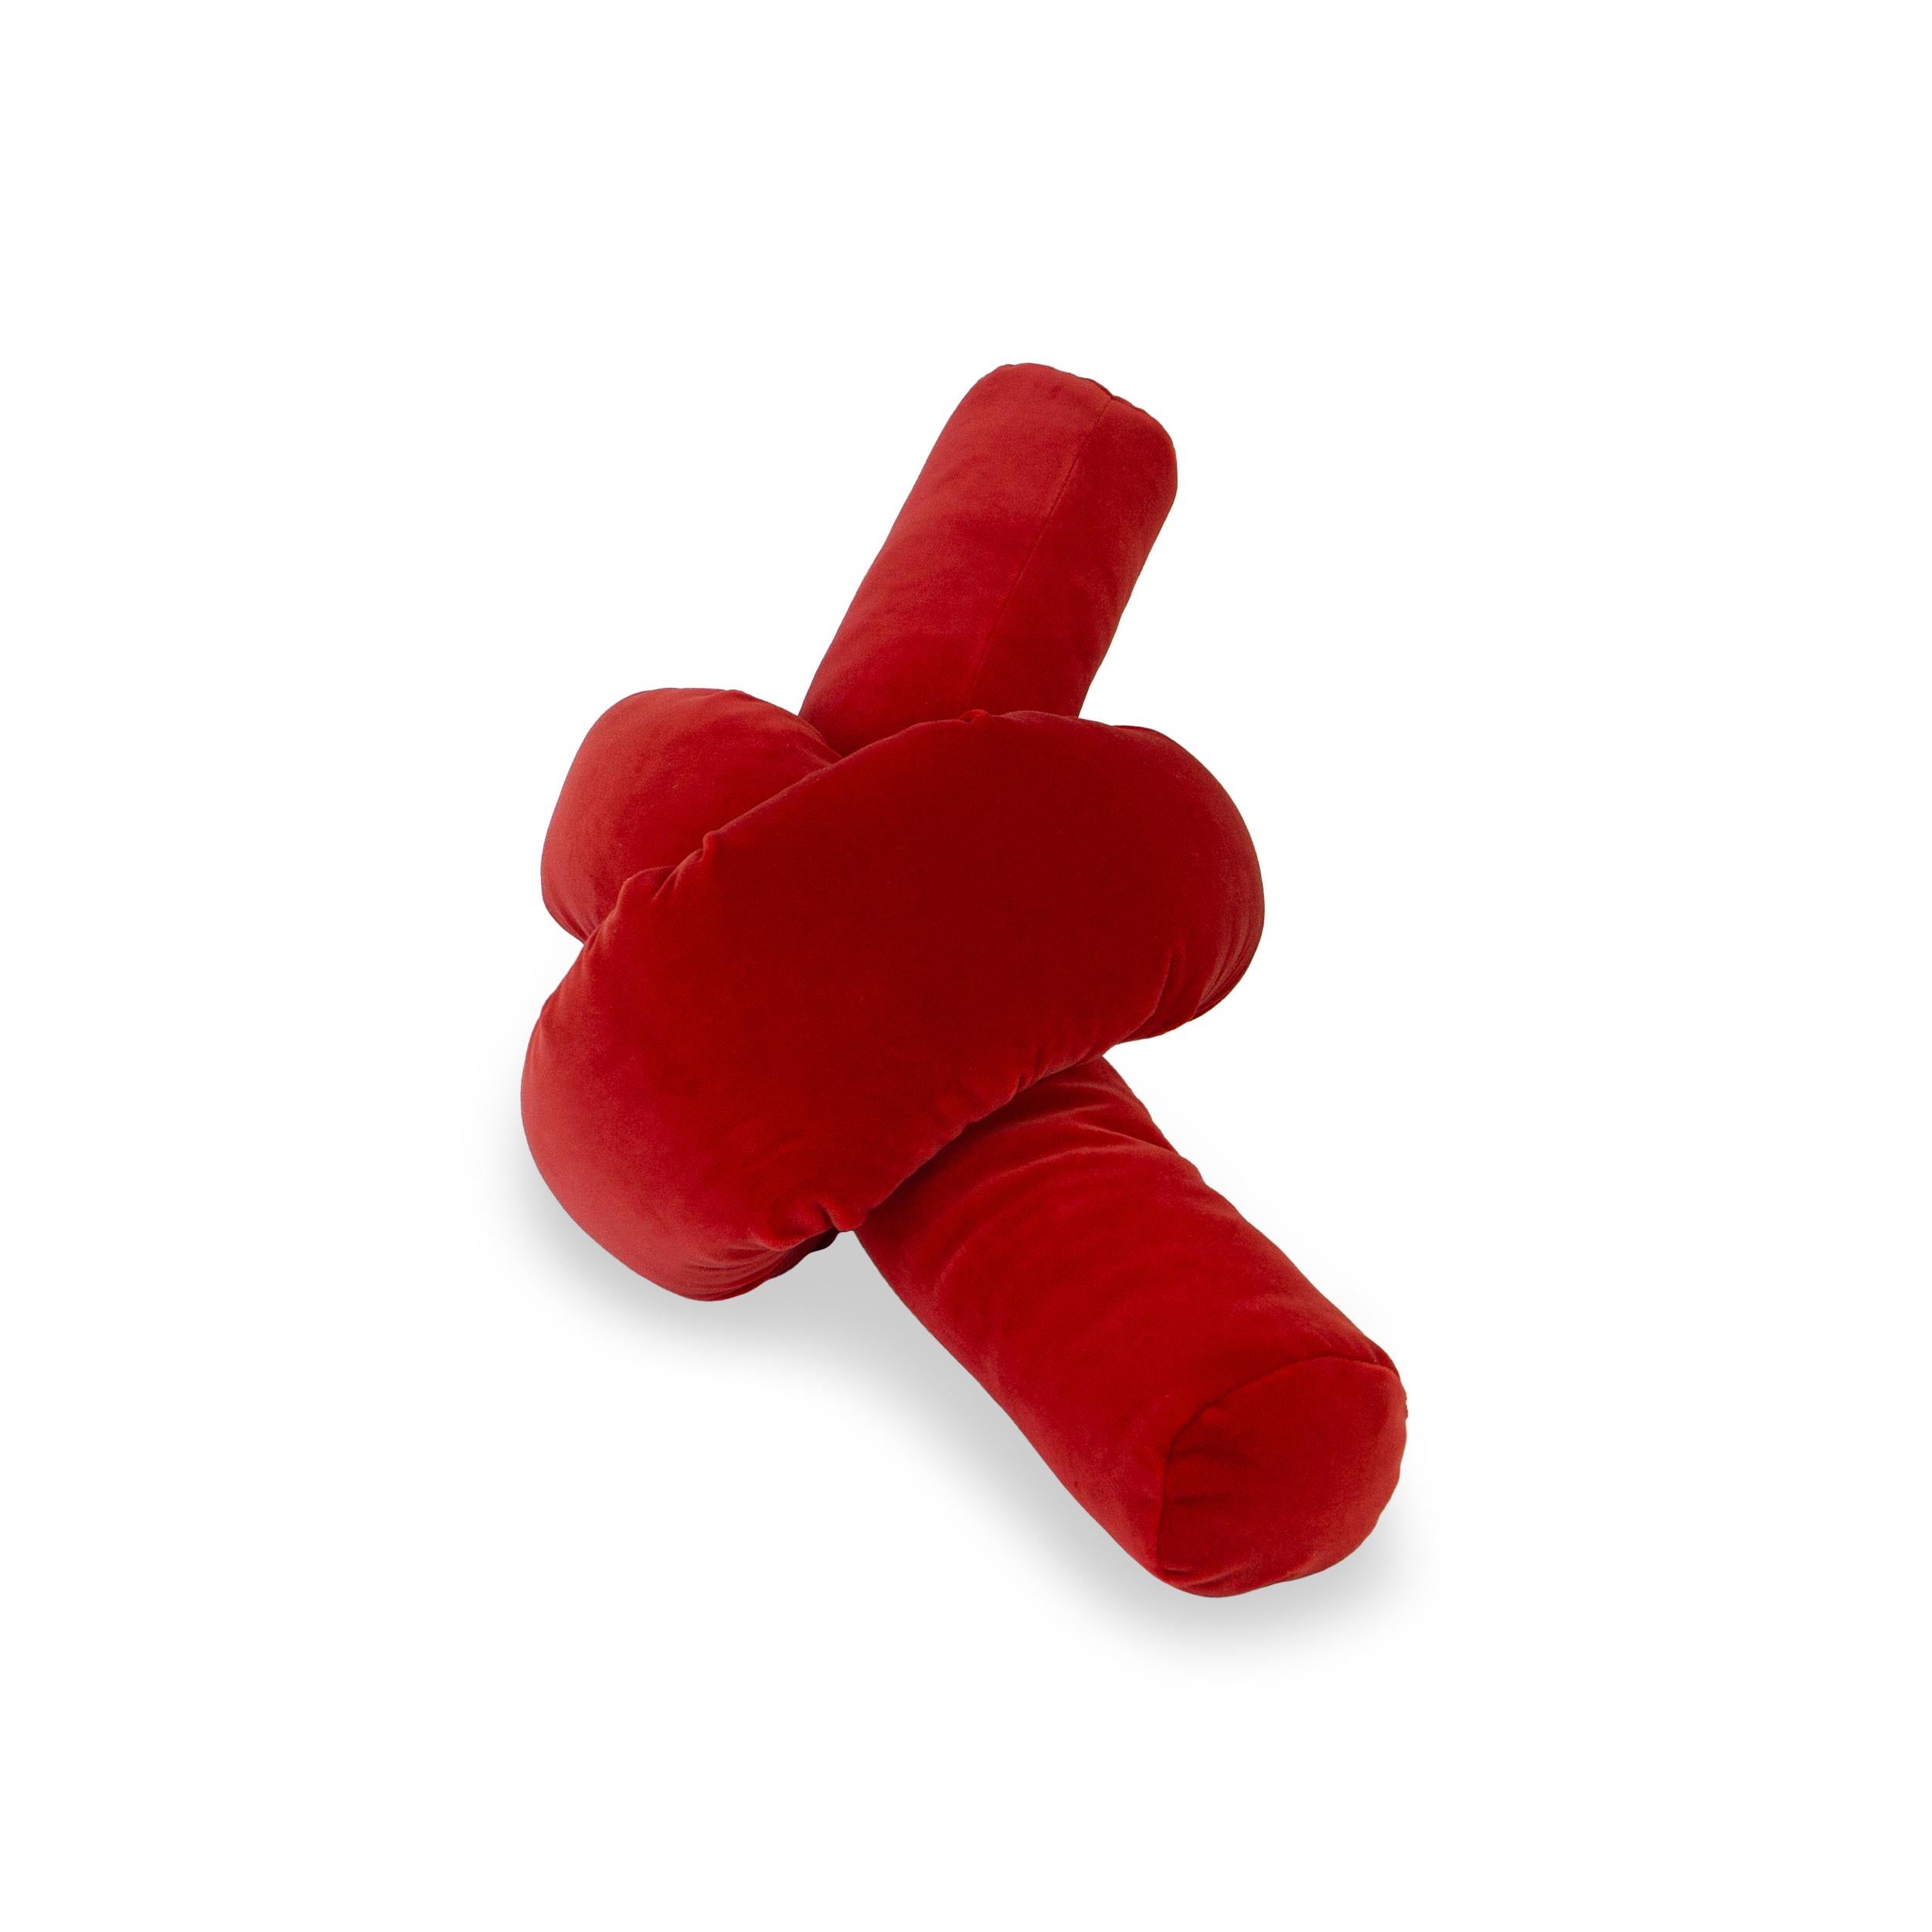 American Scarlet Red Velvet Pretzel Knot Lumbar Pillow  For Sale